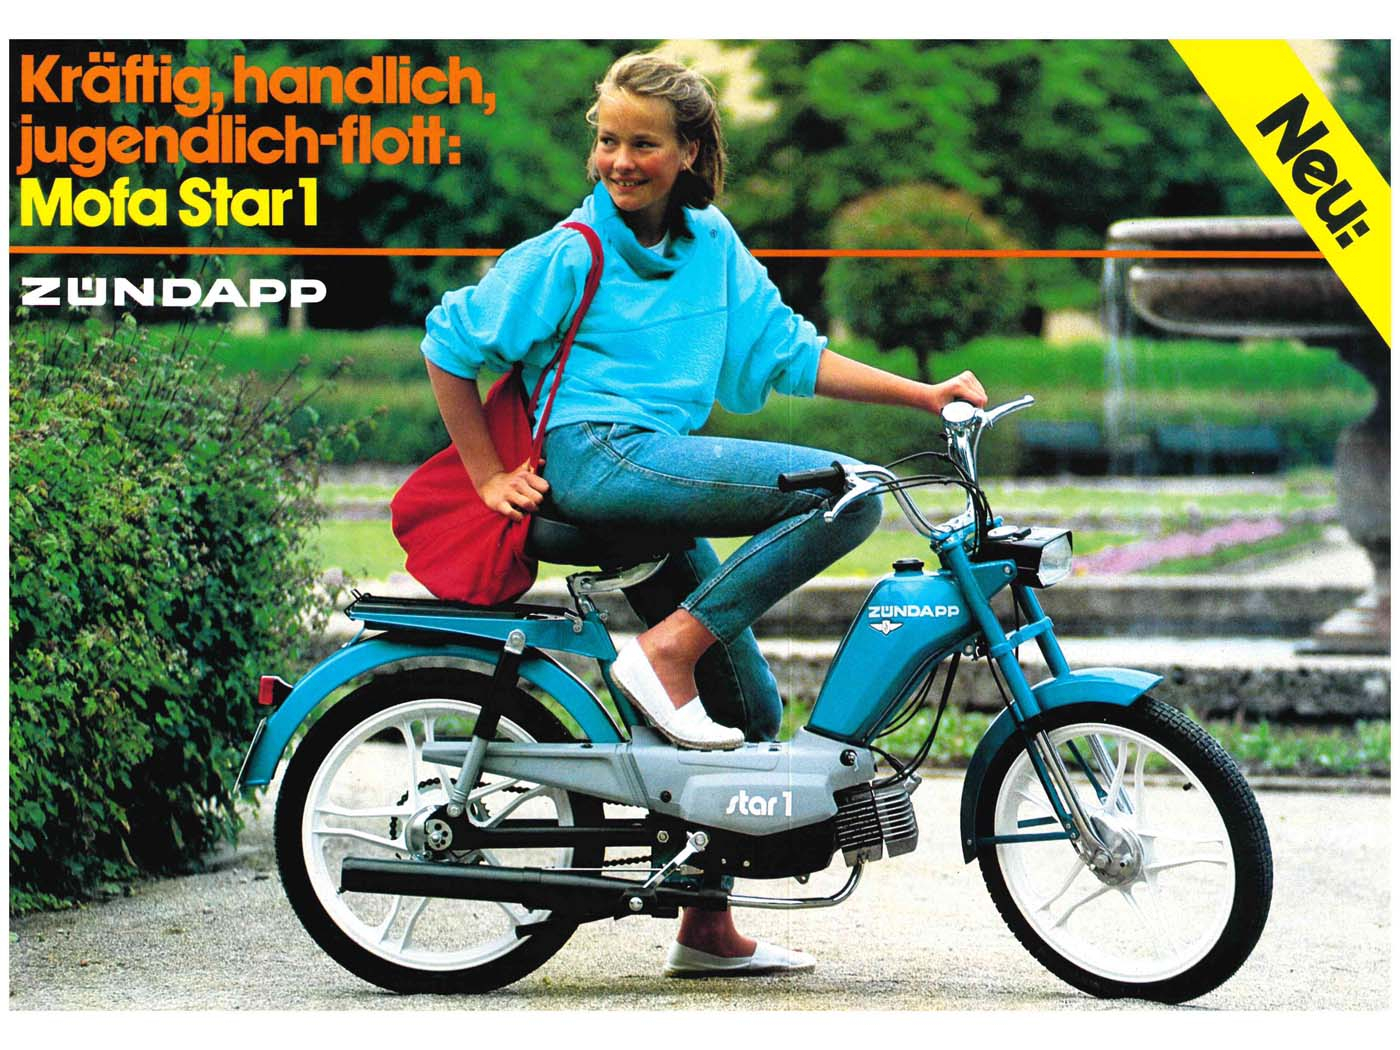 Brochure A4 Original Zündapp Moped Star 1 For Zündapp Moped Star 1